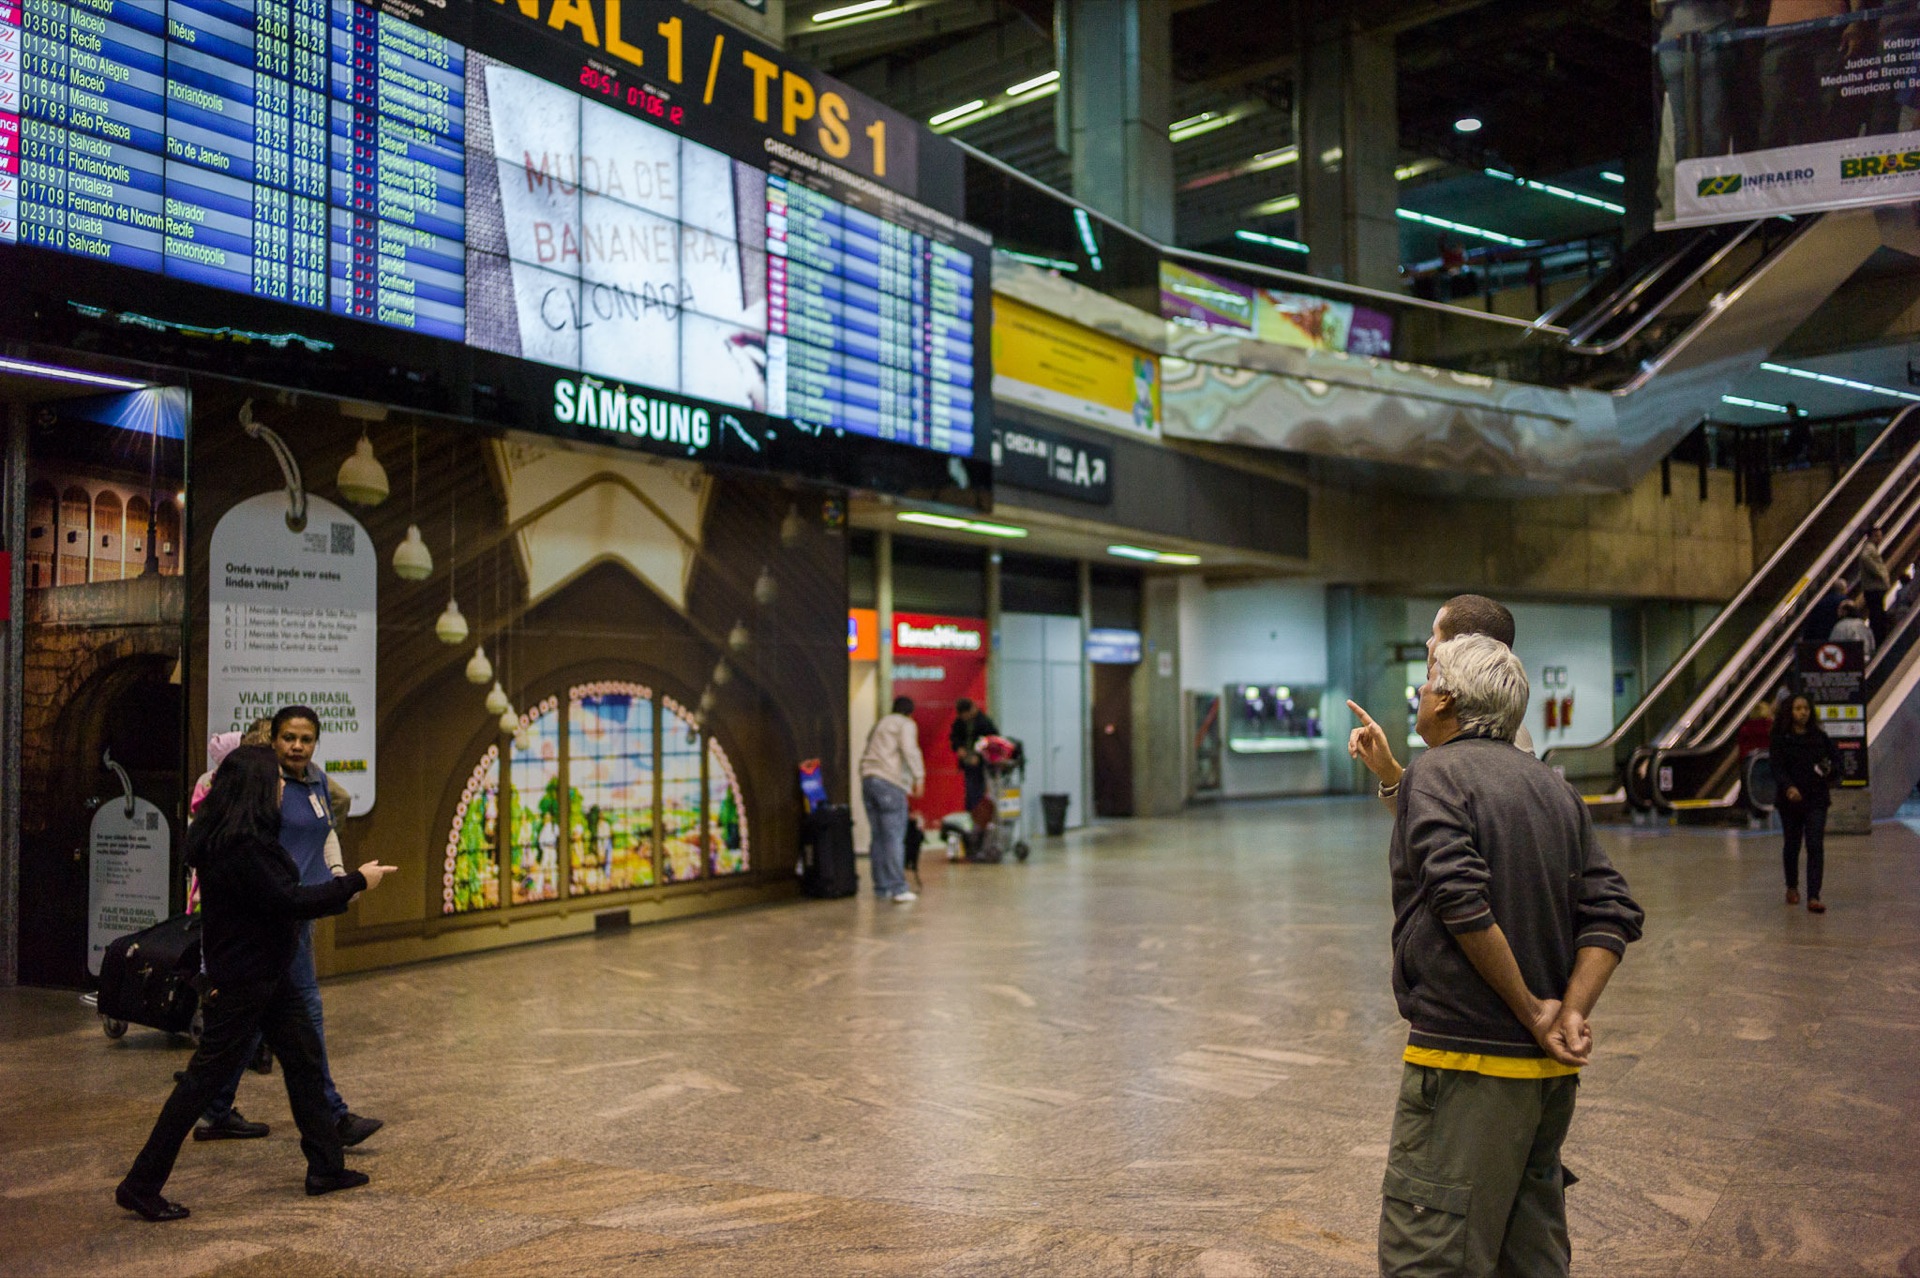 グアルーリョス国際空港 サンパウロ国際空港 と市内へのアクセス方法 Howtravel